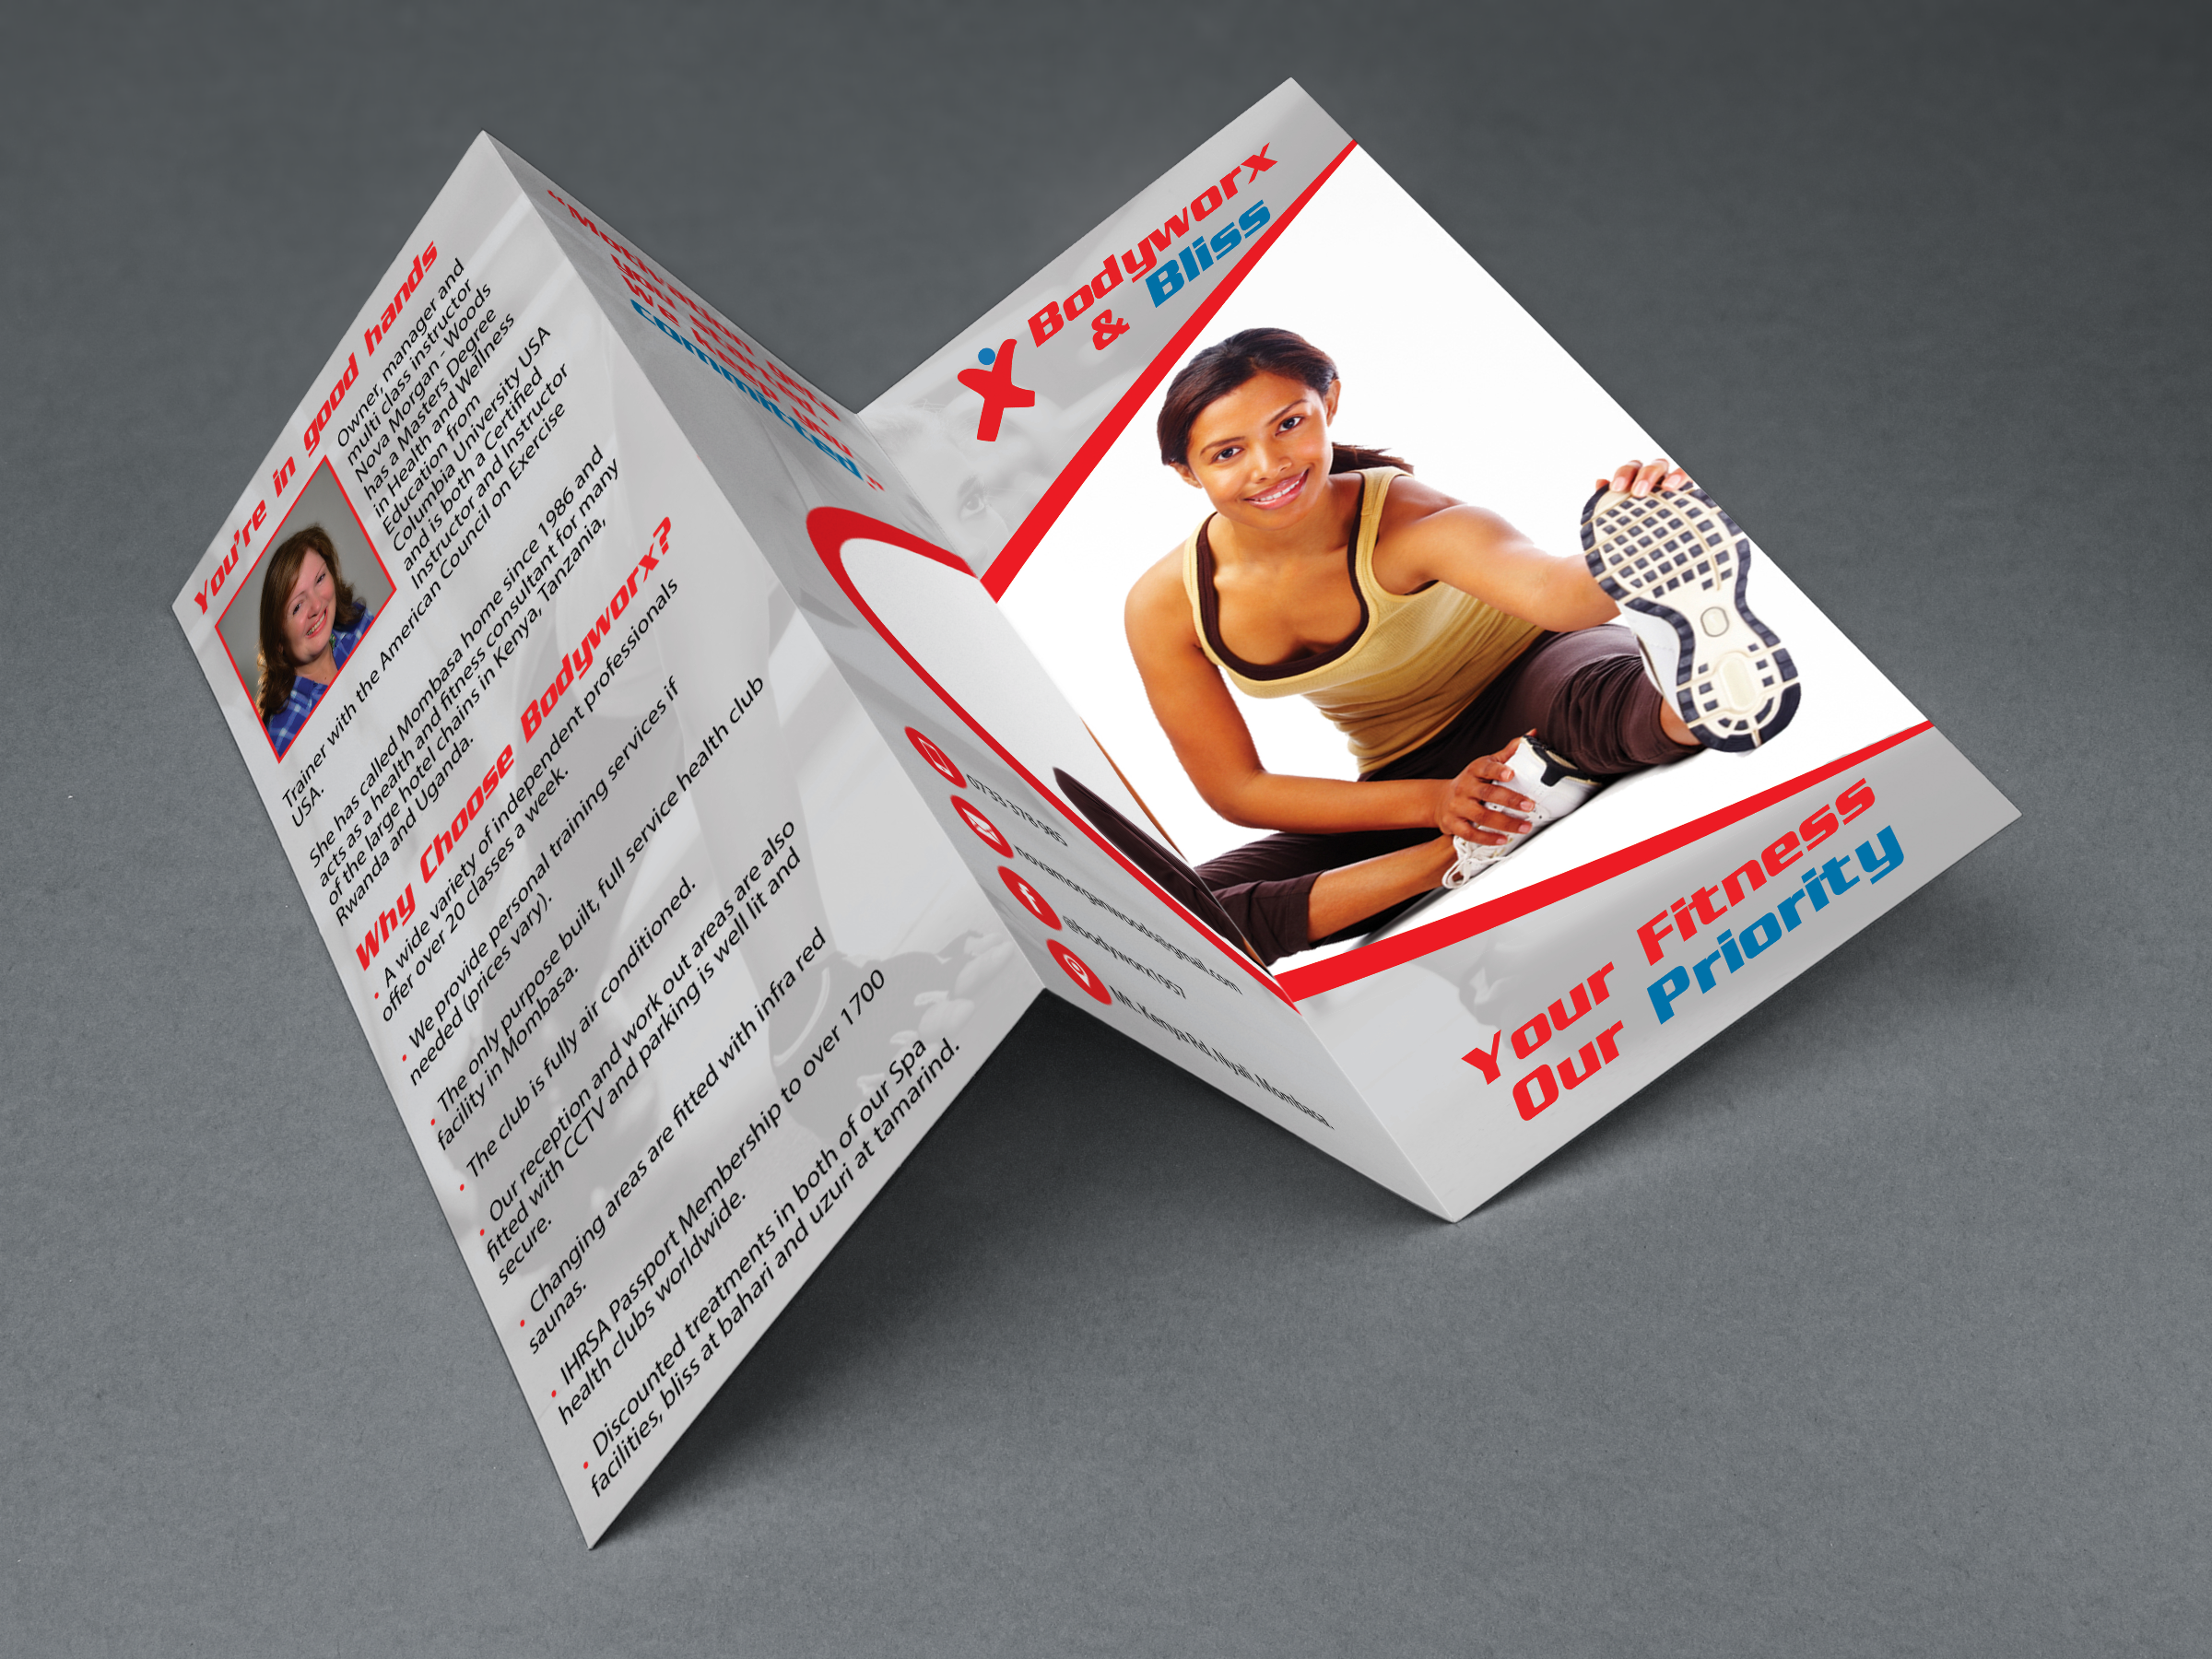 Download Brochure MockUp - Graphic Design Services In Kenya